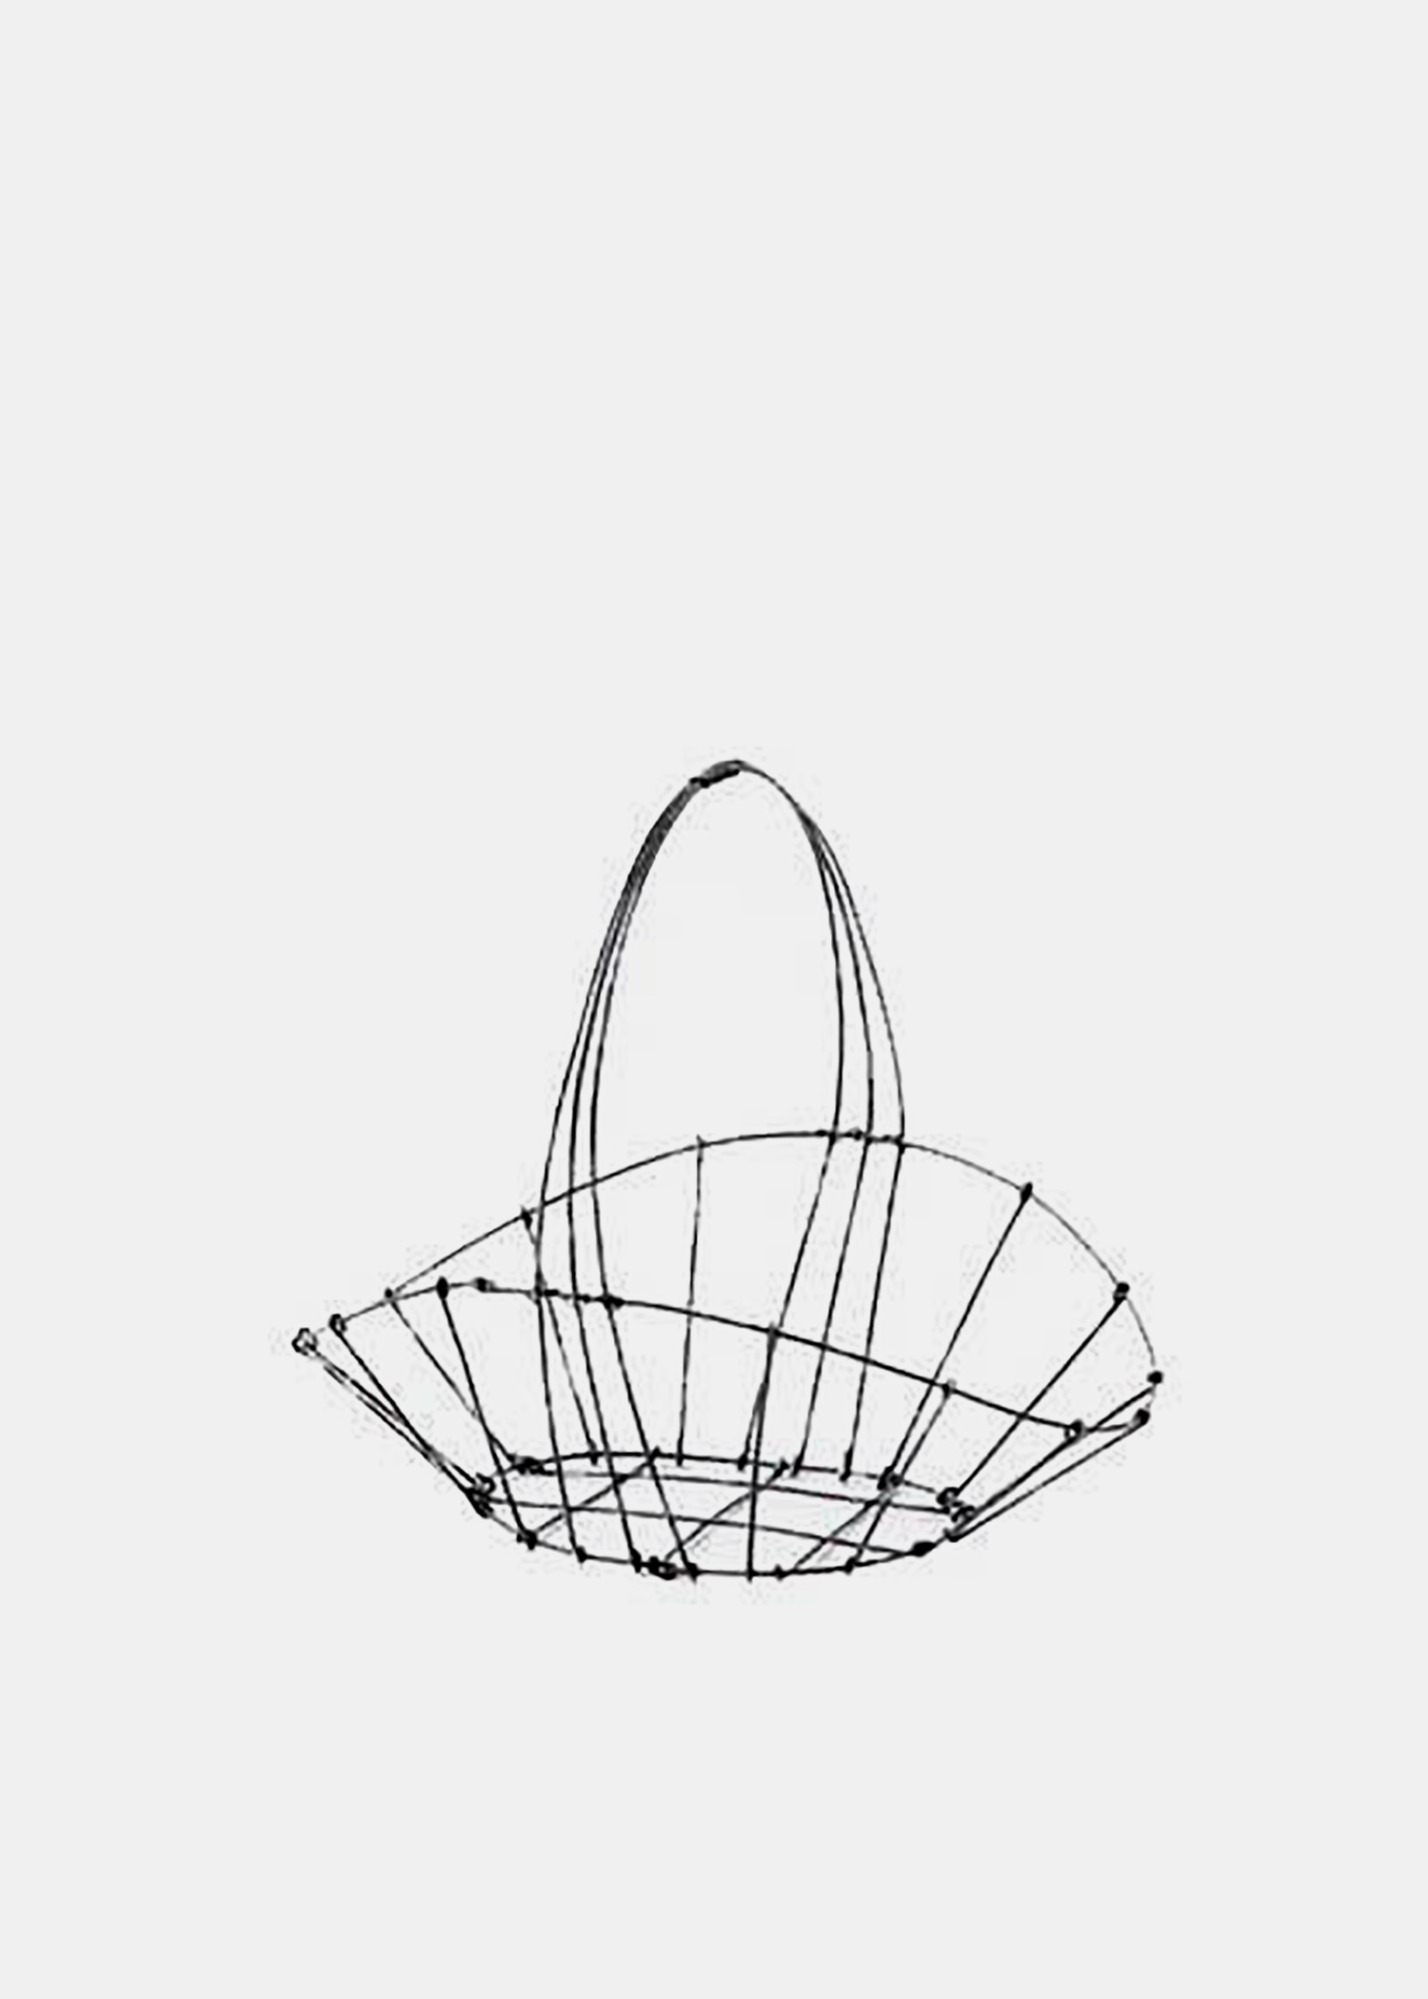 Gathering Basket